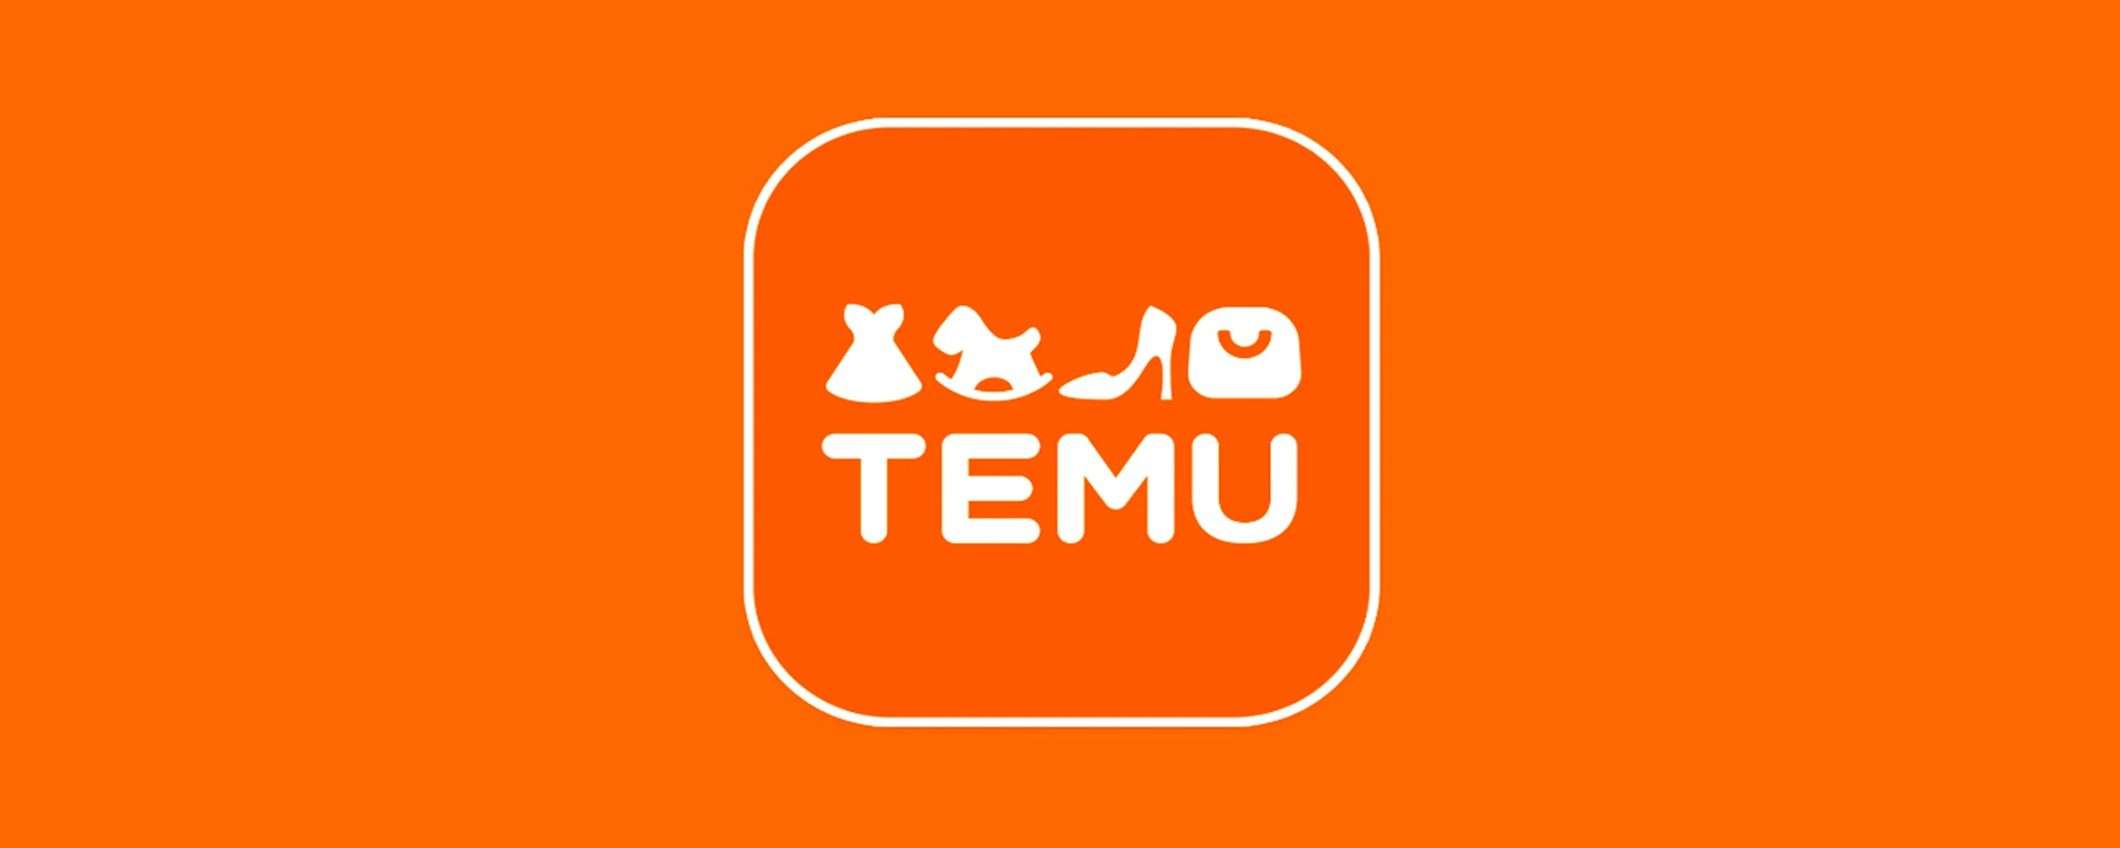 Temu offre 100 euro in cambio della voce e del volto: è legale?